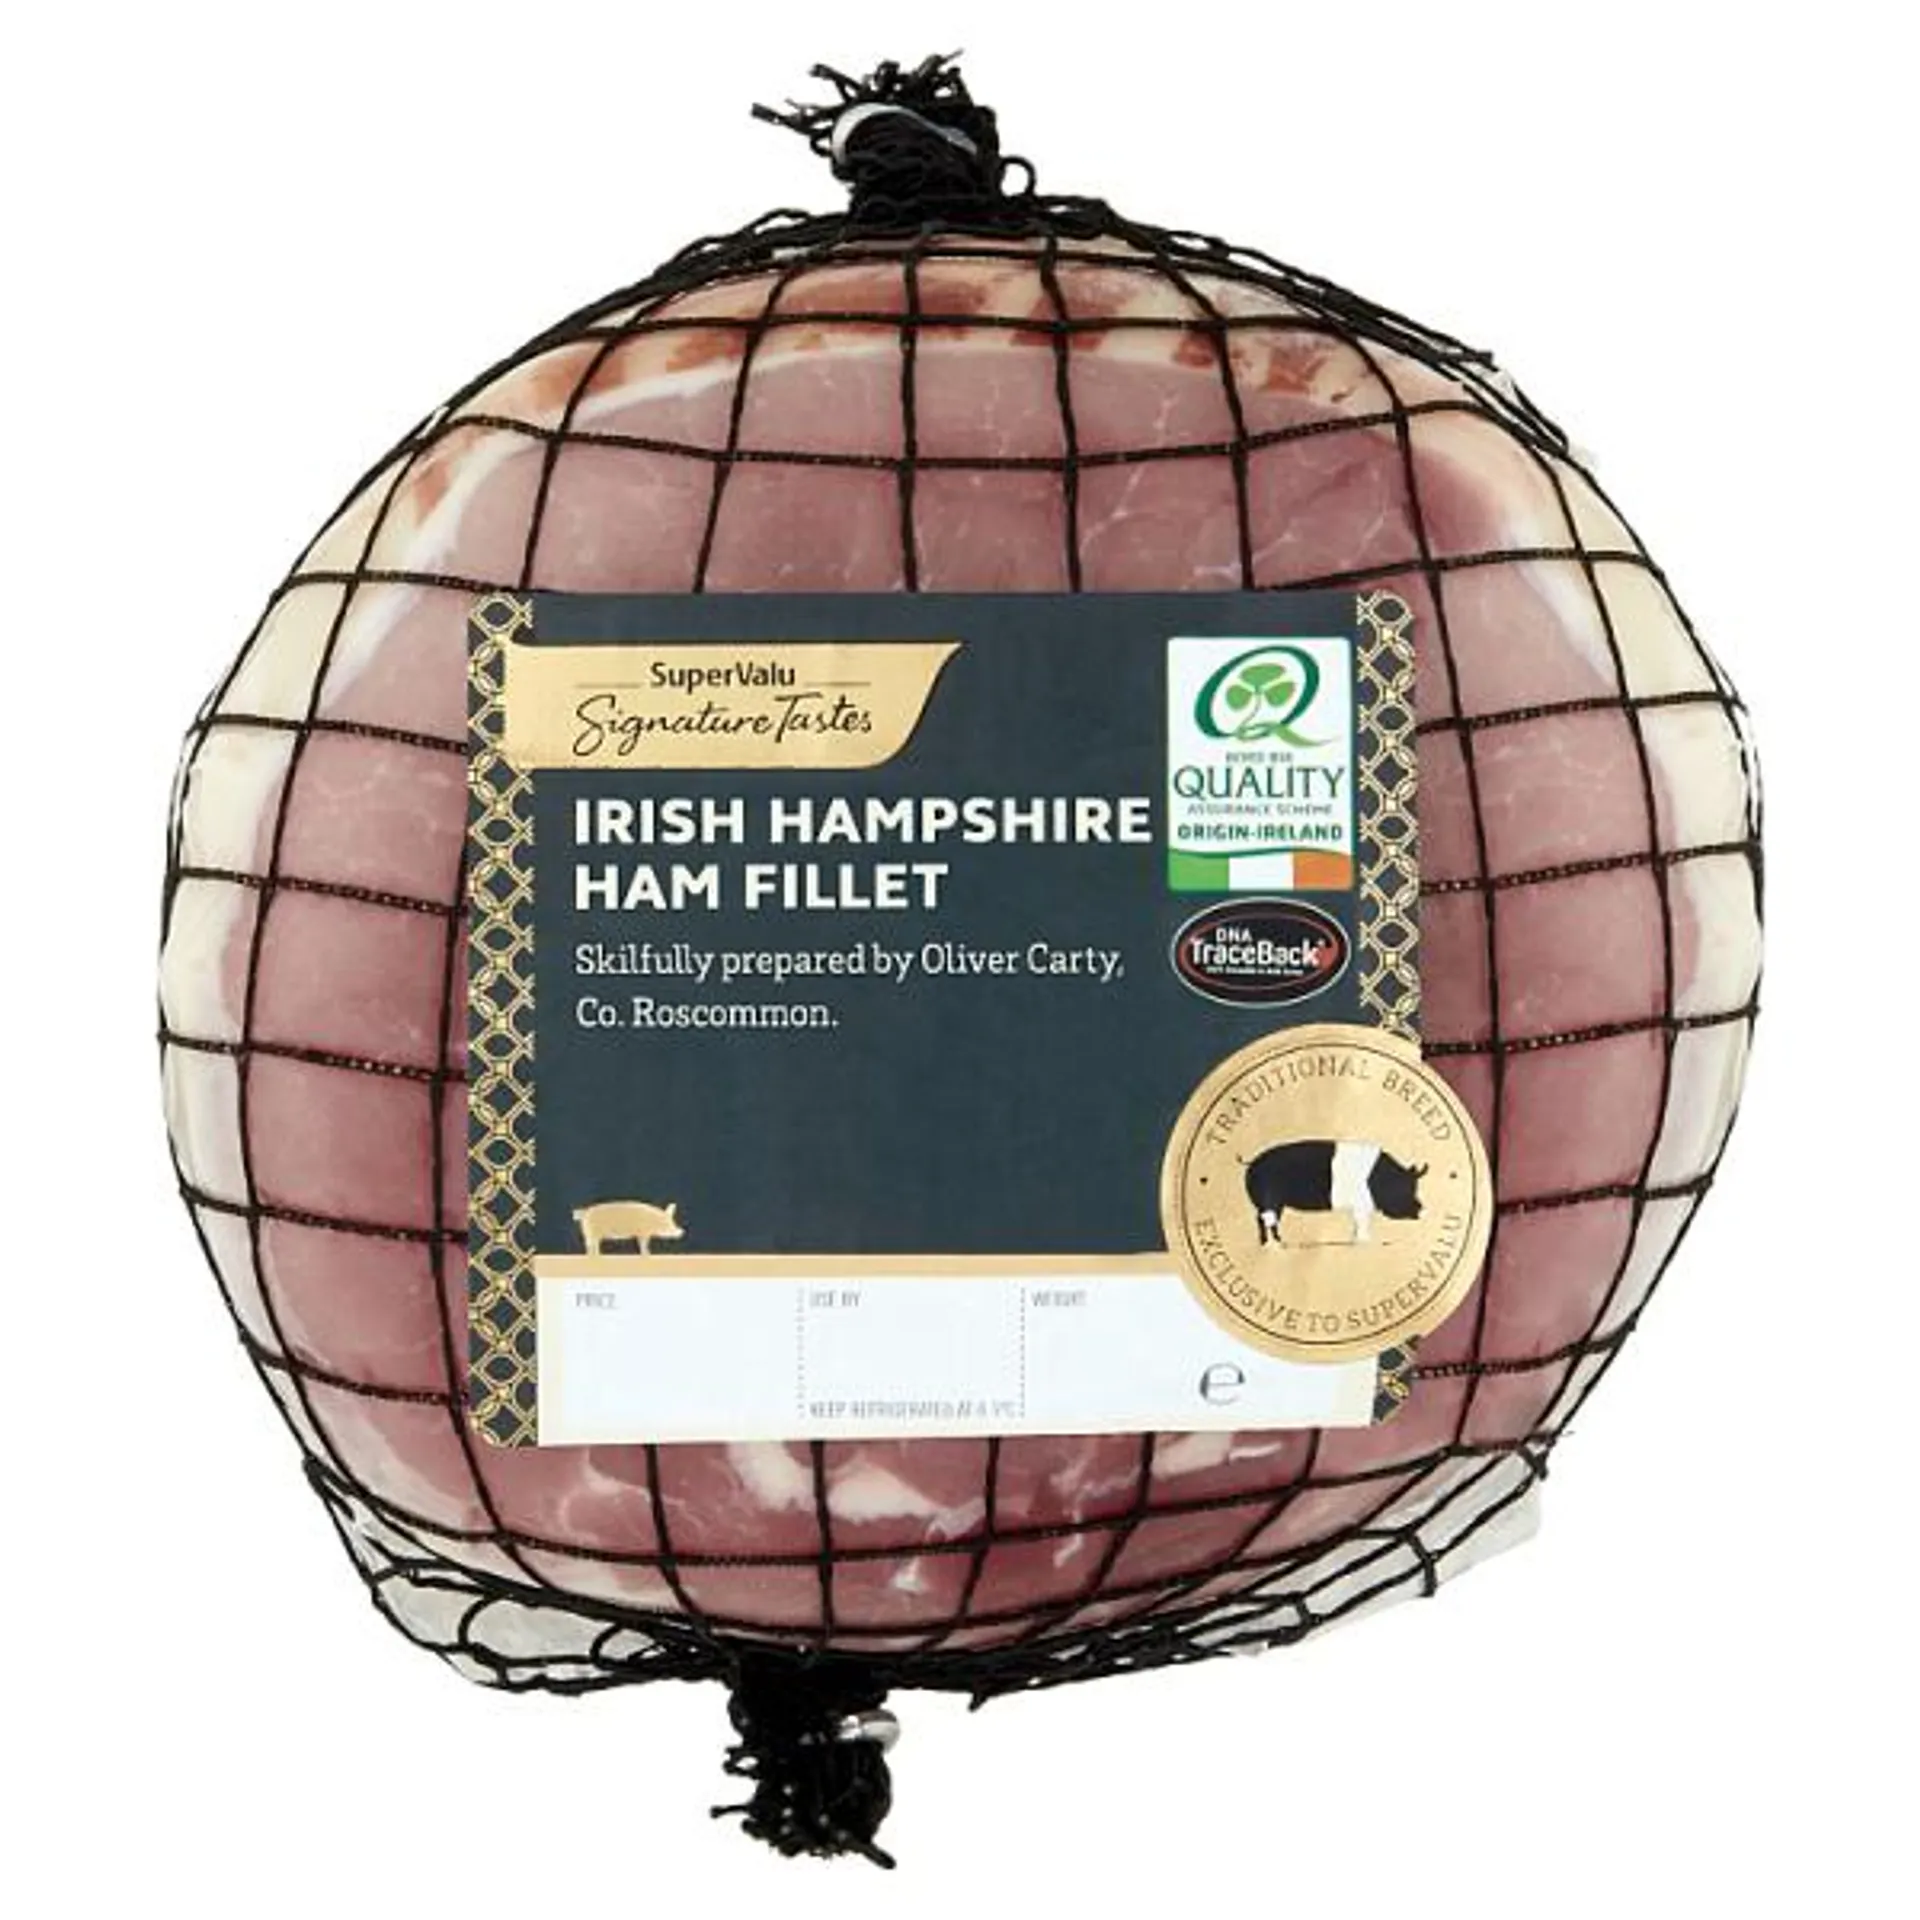 Signature Tastes Hampshire Ham Fillet (1.4 kg)